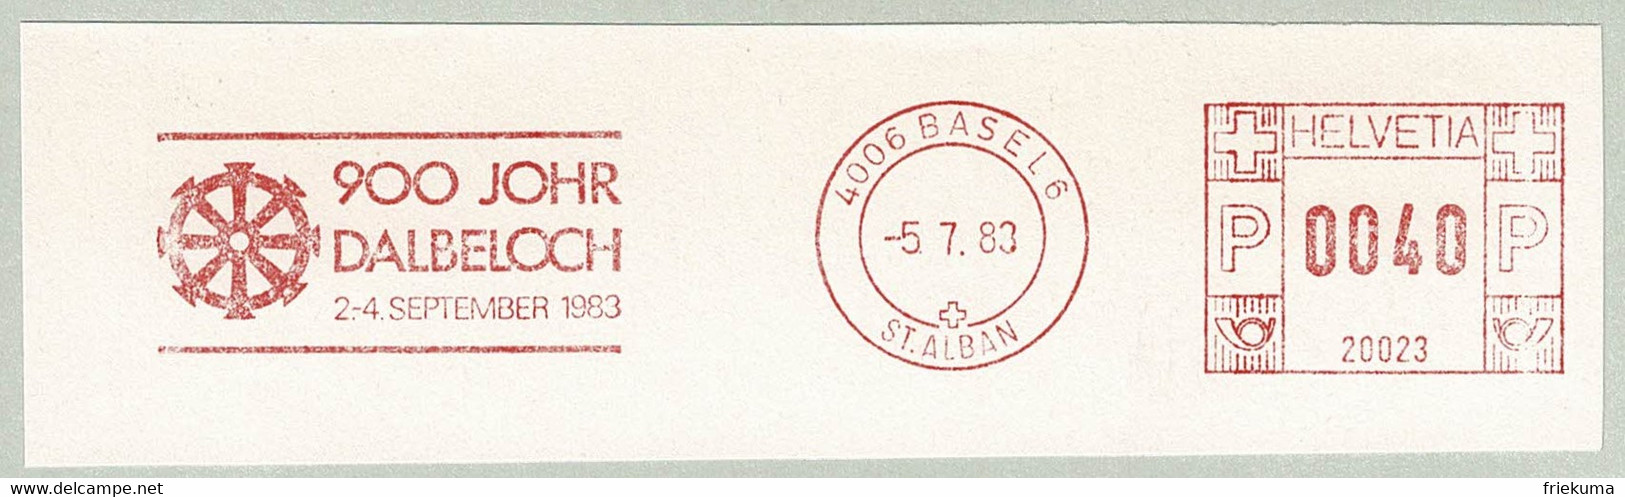 Schweiz / Schweden 1983, Freistempel / EMA / Meterstamp Dalbeloch Basel, Wasserrad / Roue Hydraulique / Water Wheel - Wasser